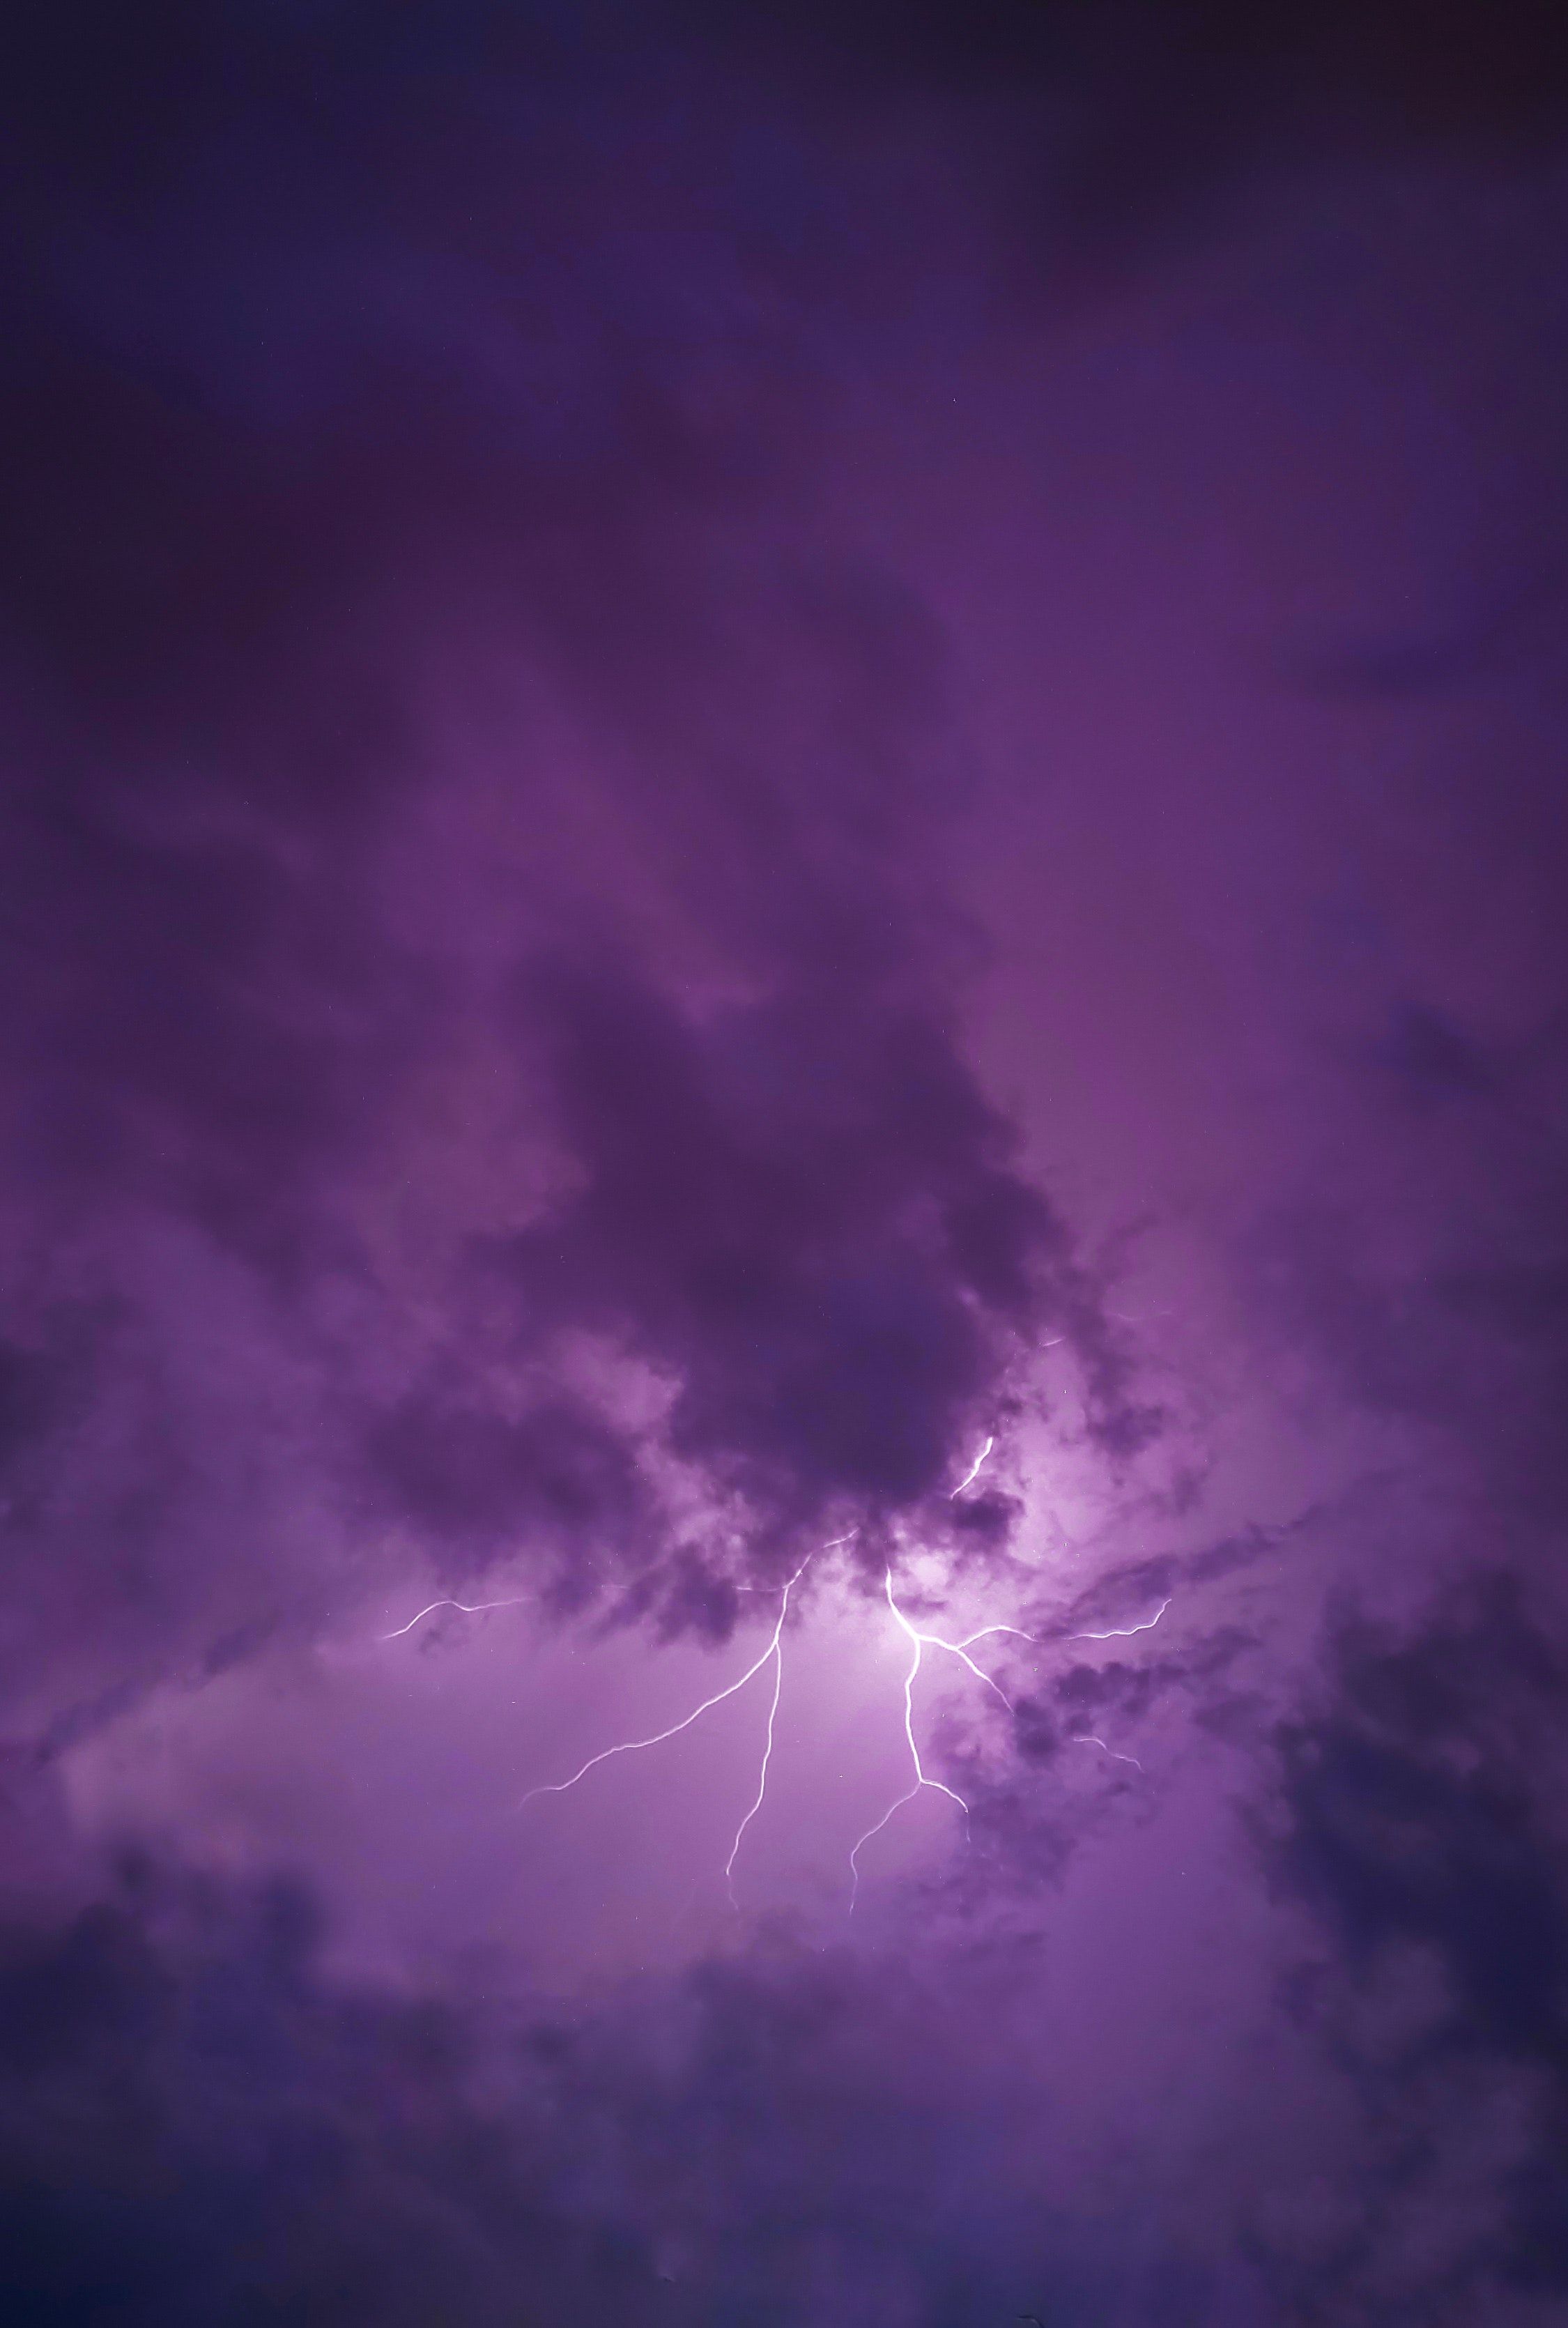 Lightning Bolt Photo, Download The BEST Free Lightning Bolt & HD Image